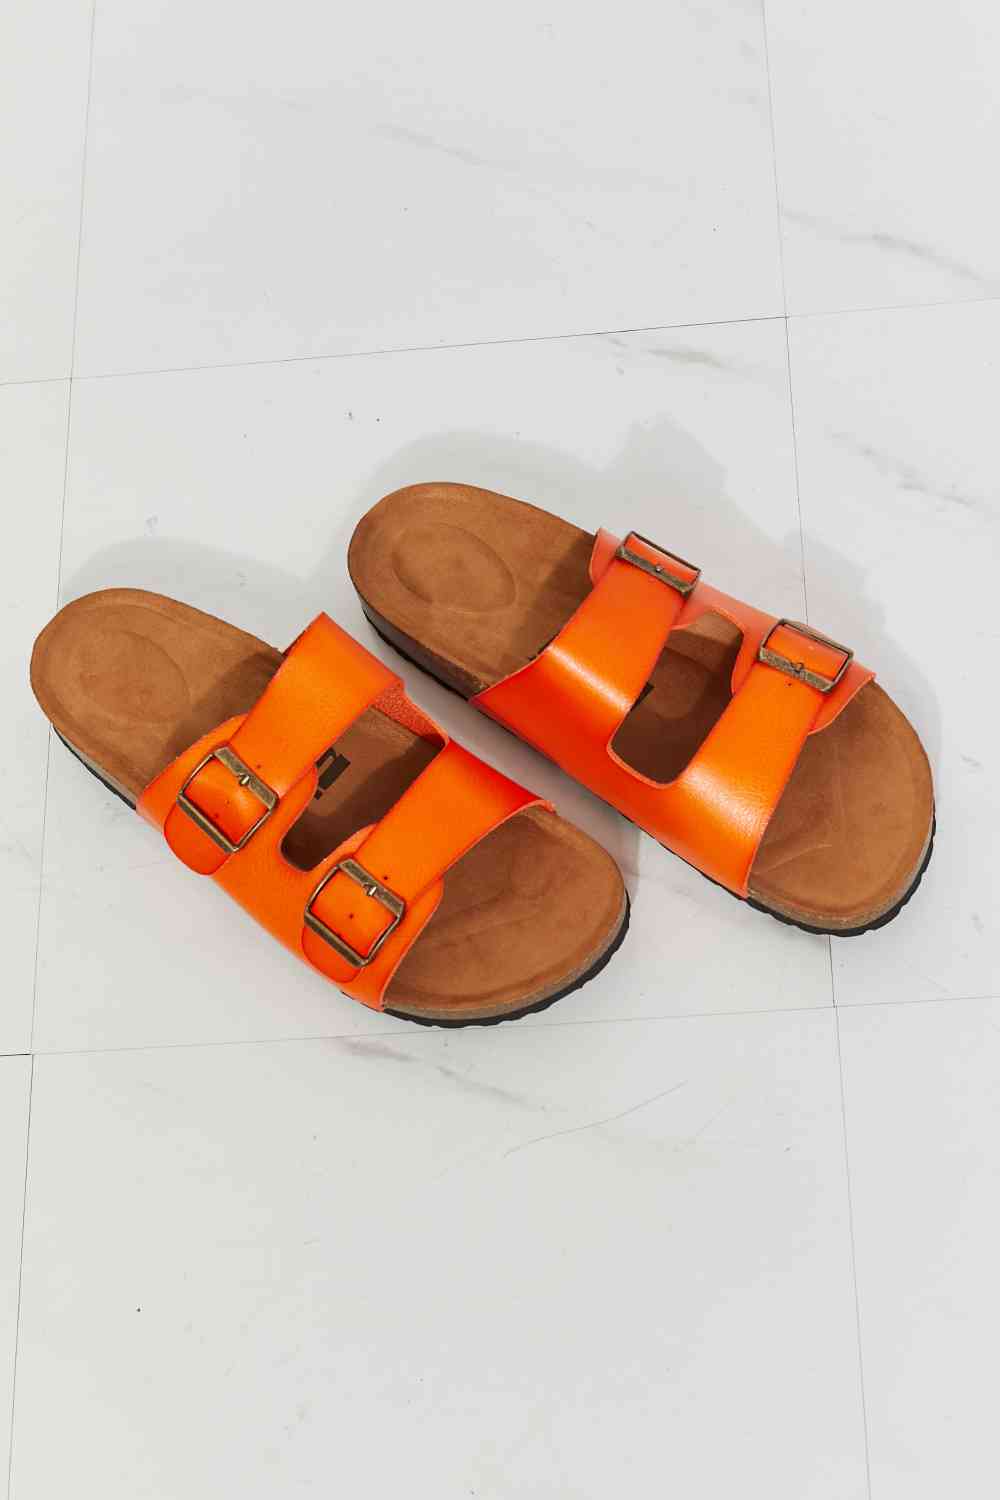 MMShoes Feeling Alive Double Banded Slide Sandals in Orange - BloomBliss.com